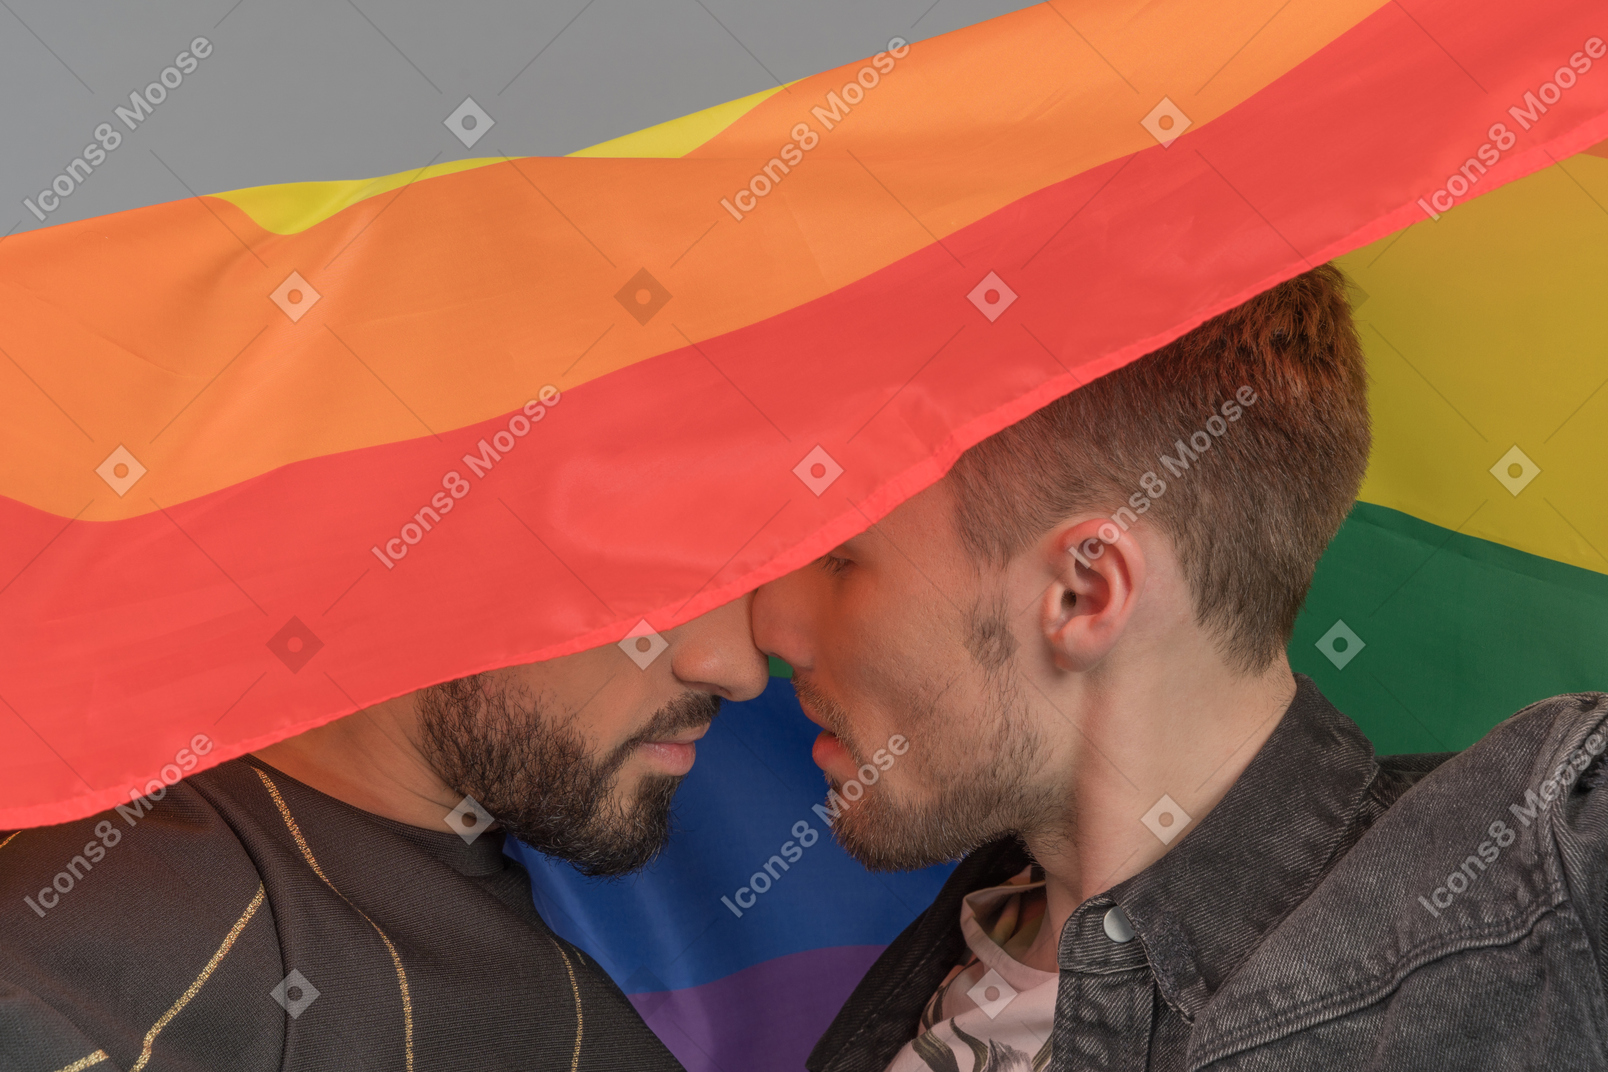 Gros plan de deux jeunes hommes se touchant intimement le nez sous le drapeau lgbt